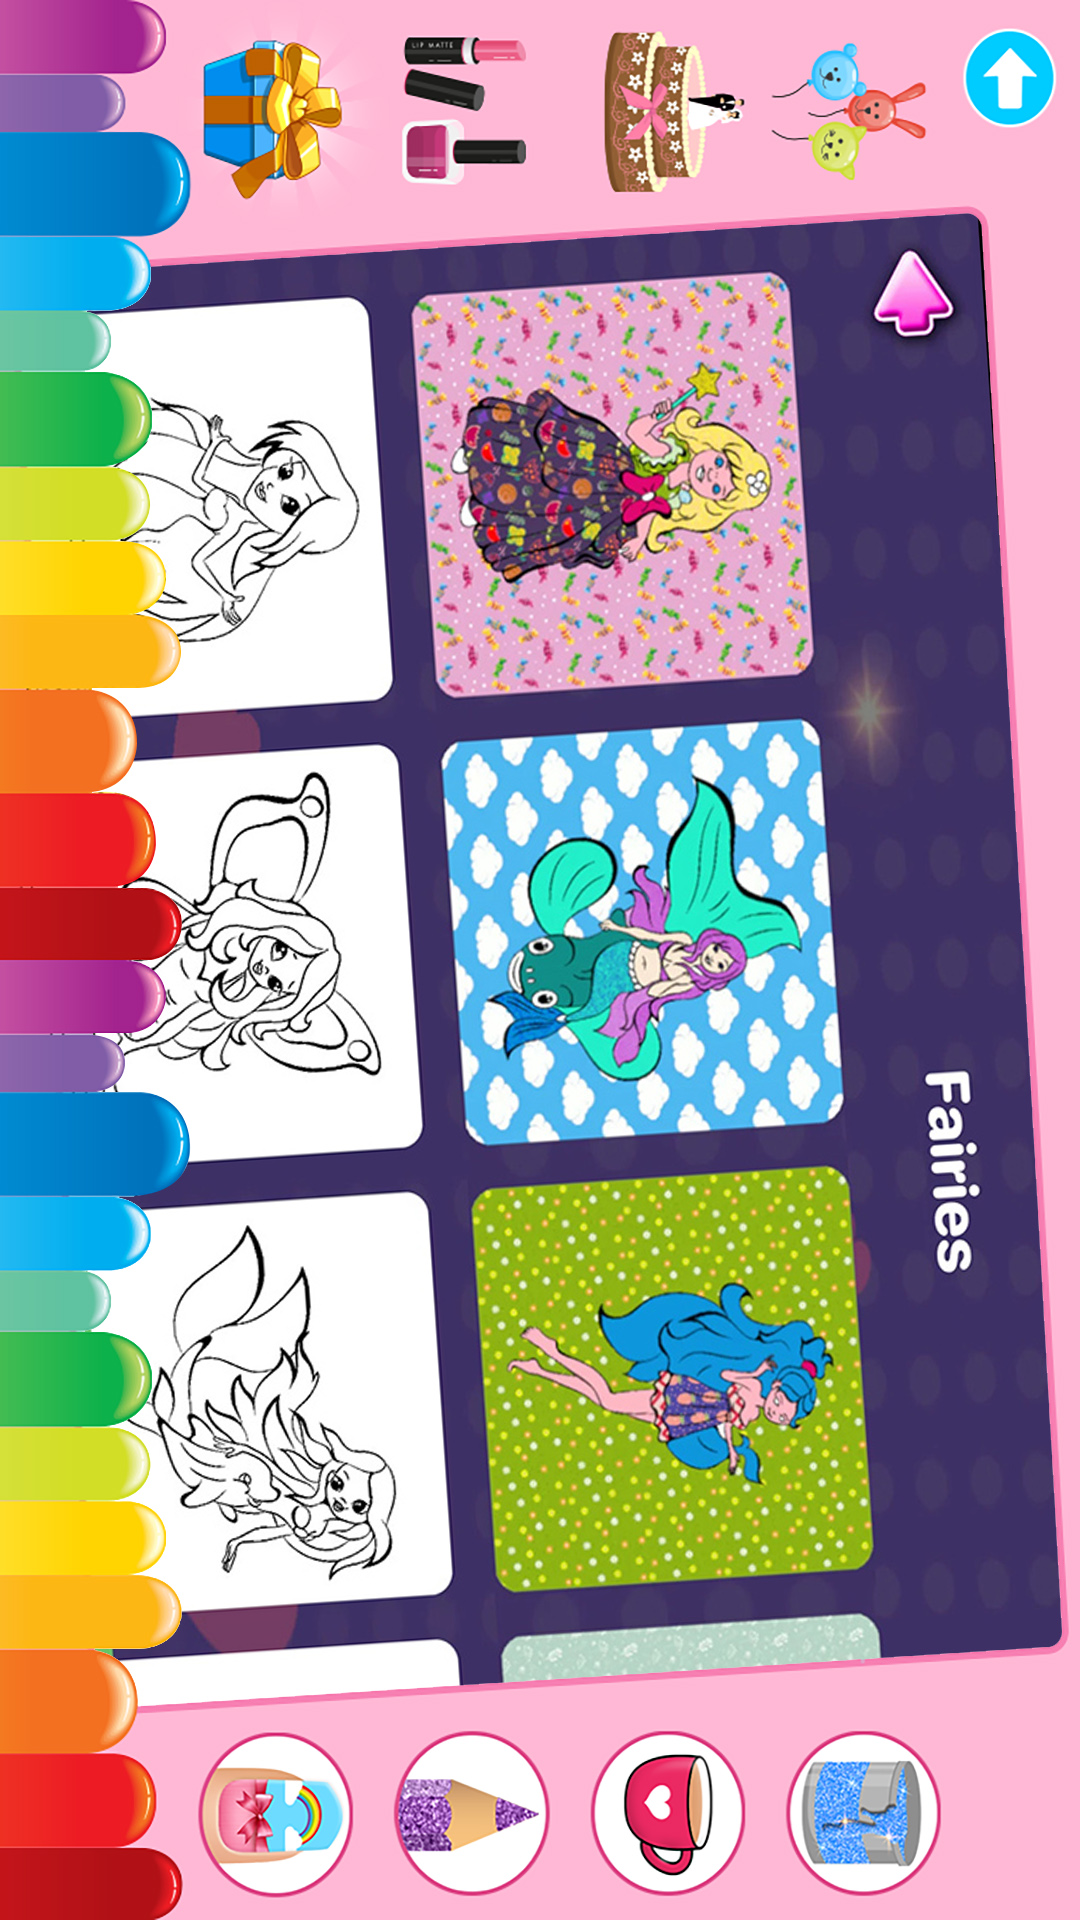 数字趣味填色-儿童创意涂色涂鸦 v1.0-成为一名艺术家